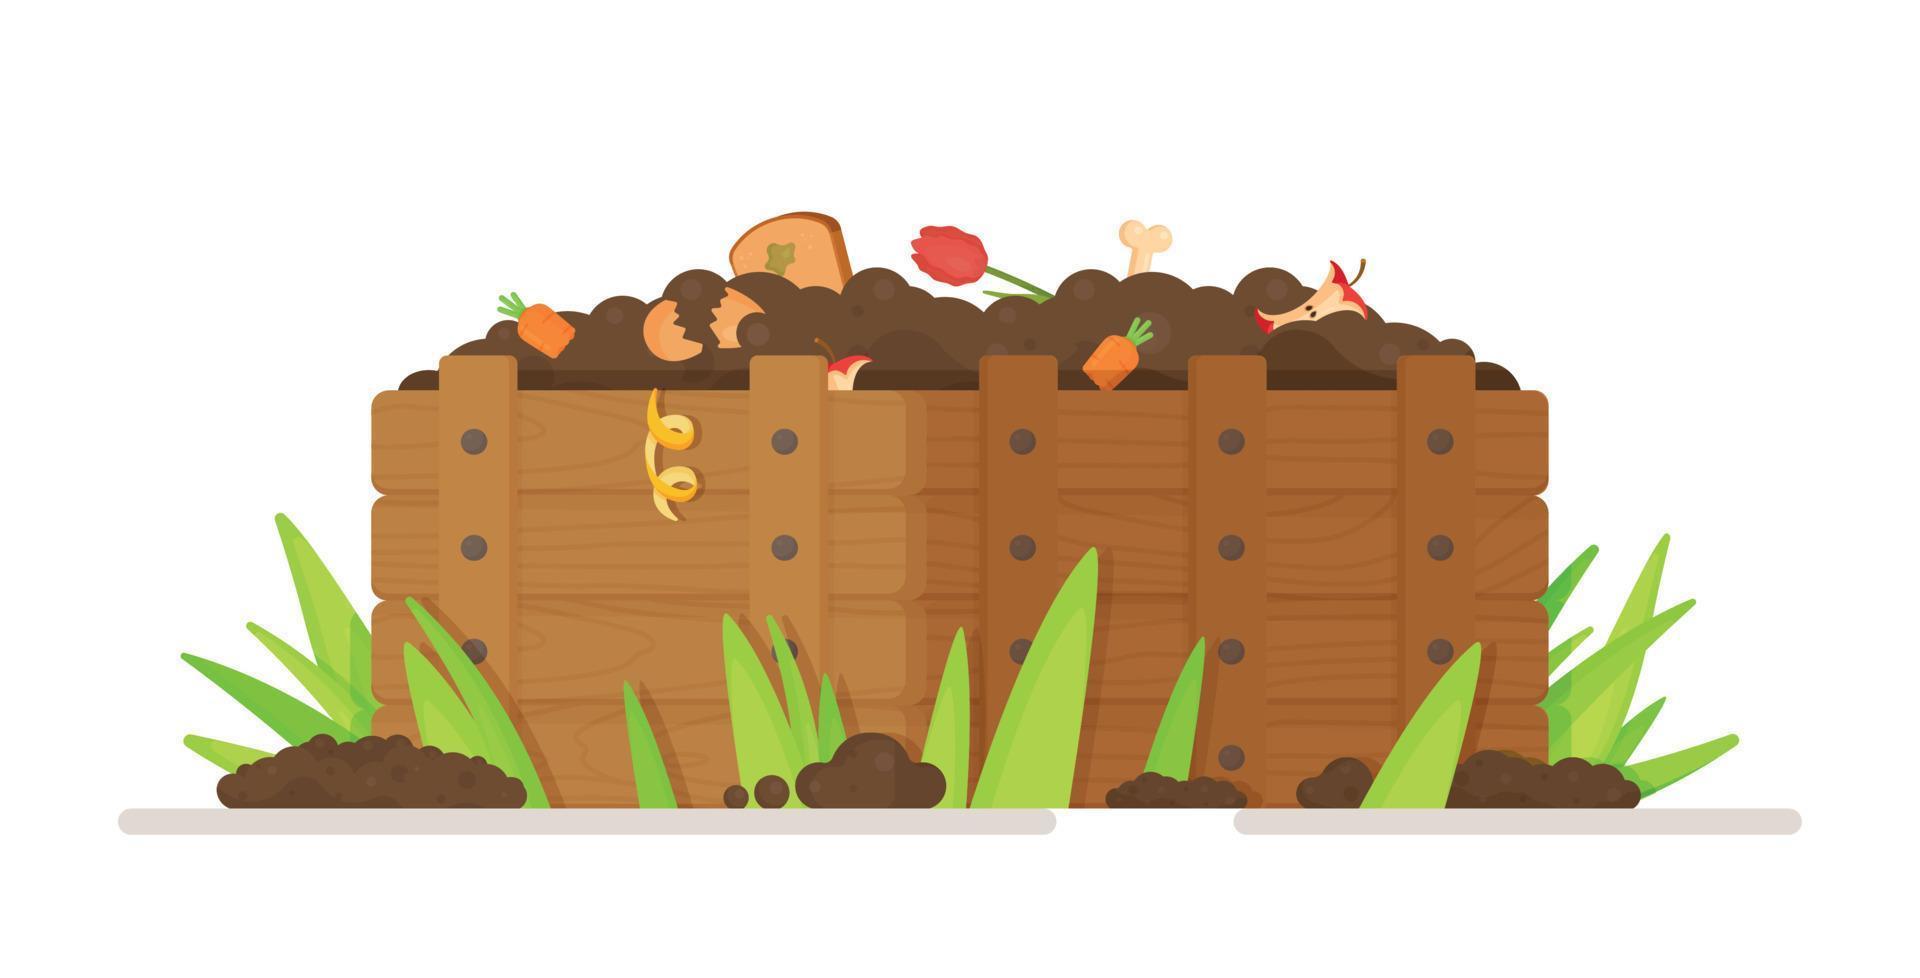 vektorillustration av att samla avfall för återvinning i en kompostgrop. en låda med skinn, rester och jord. vektor